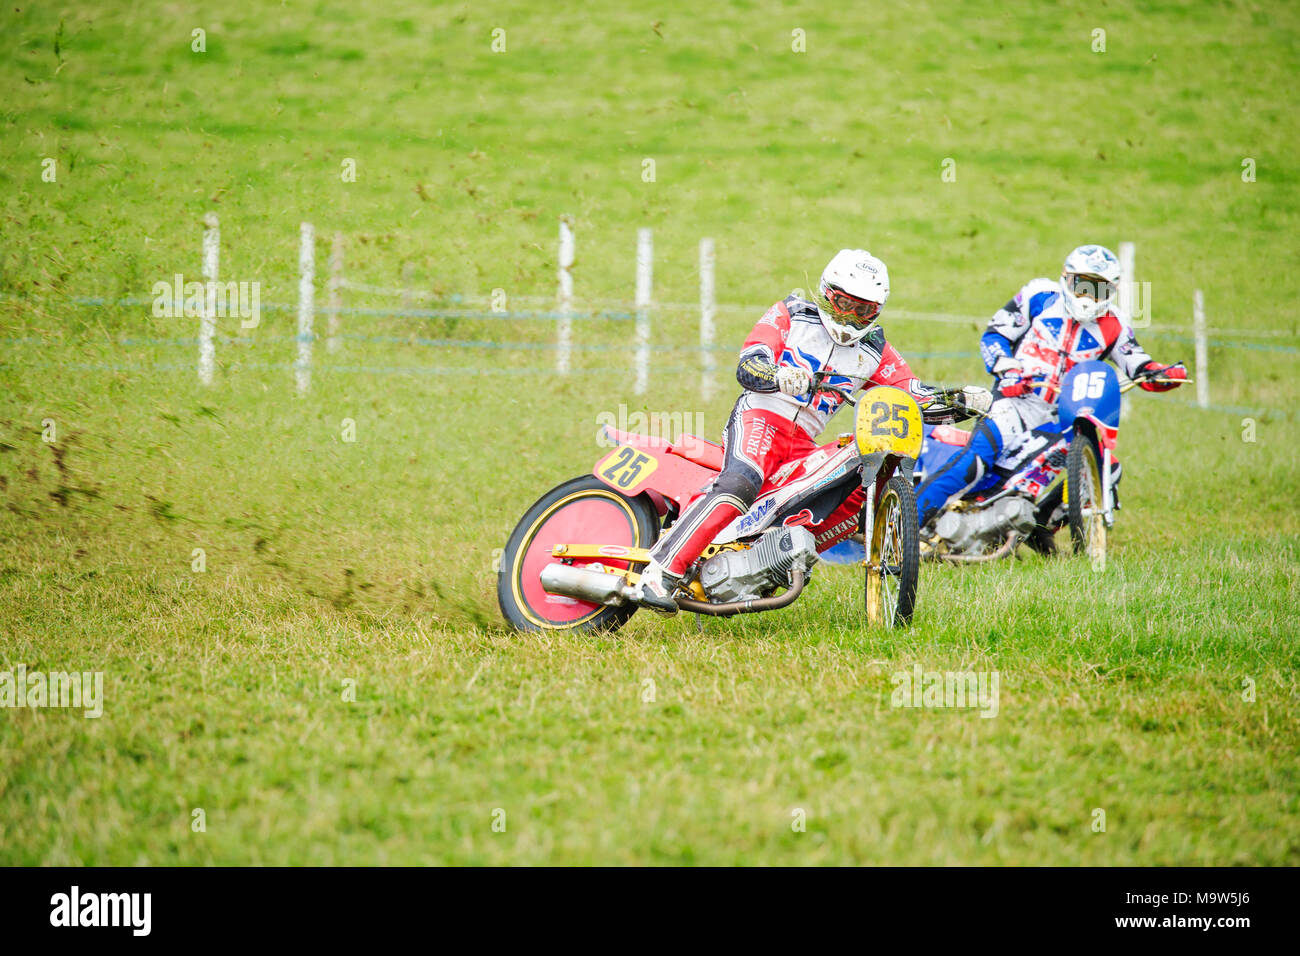 Acción de carreras de motos de pista de hierba Foto de stock